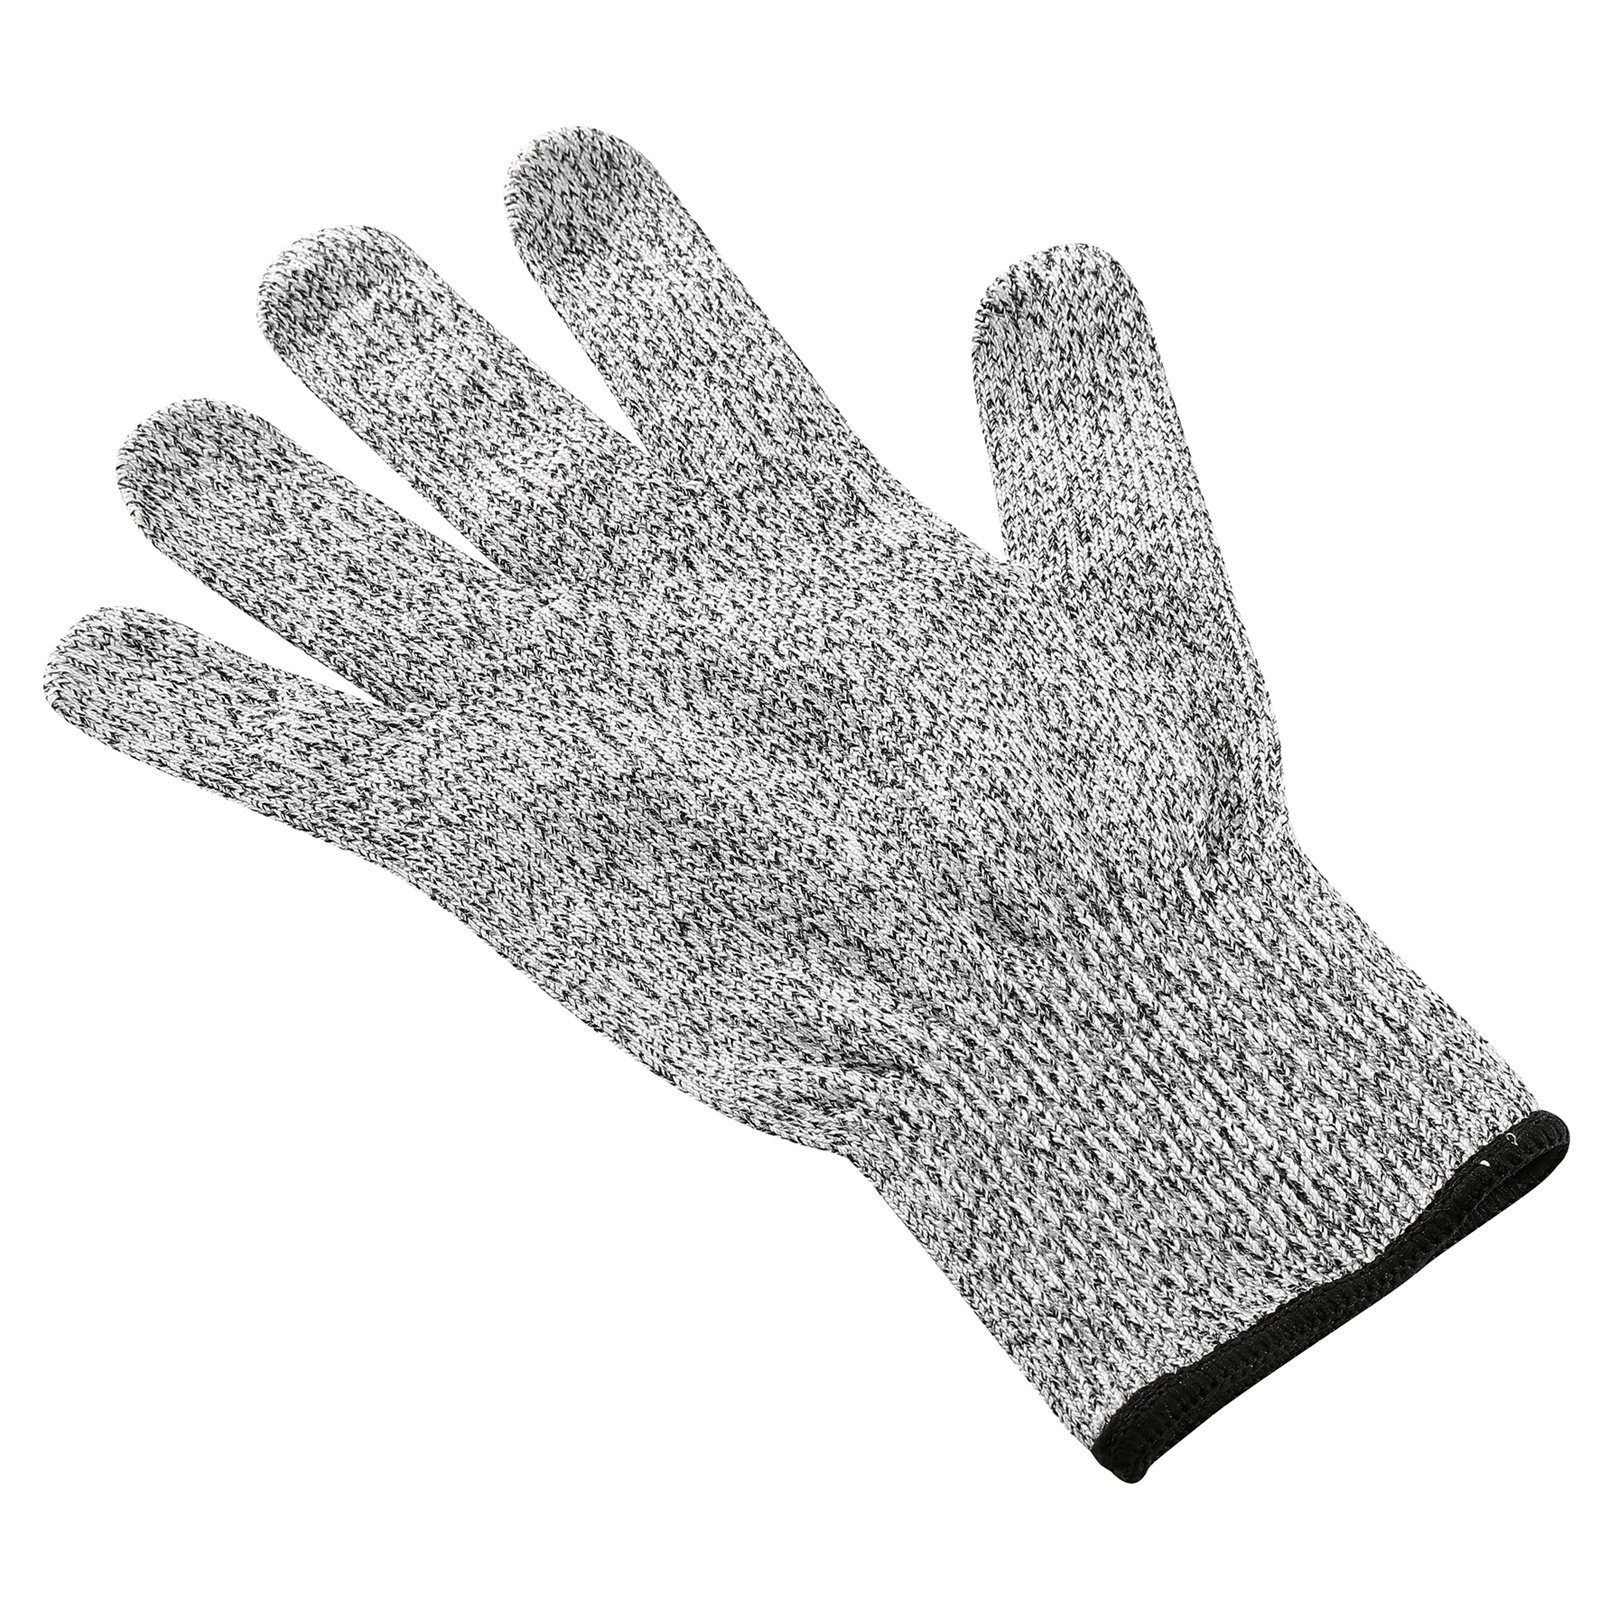 Handschuh Schnittschutzhandschuhe Küchenprofi Schnittschutz Safety